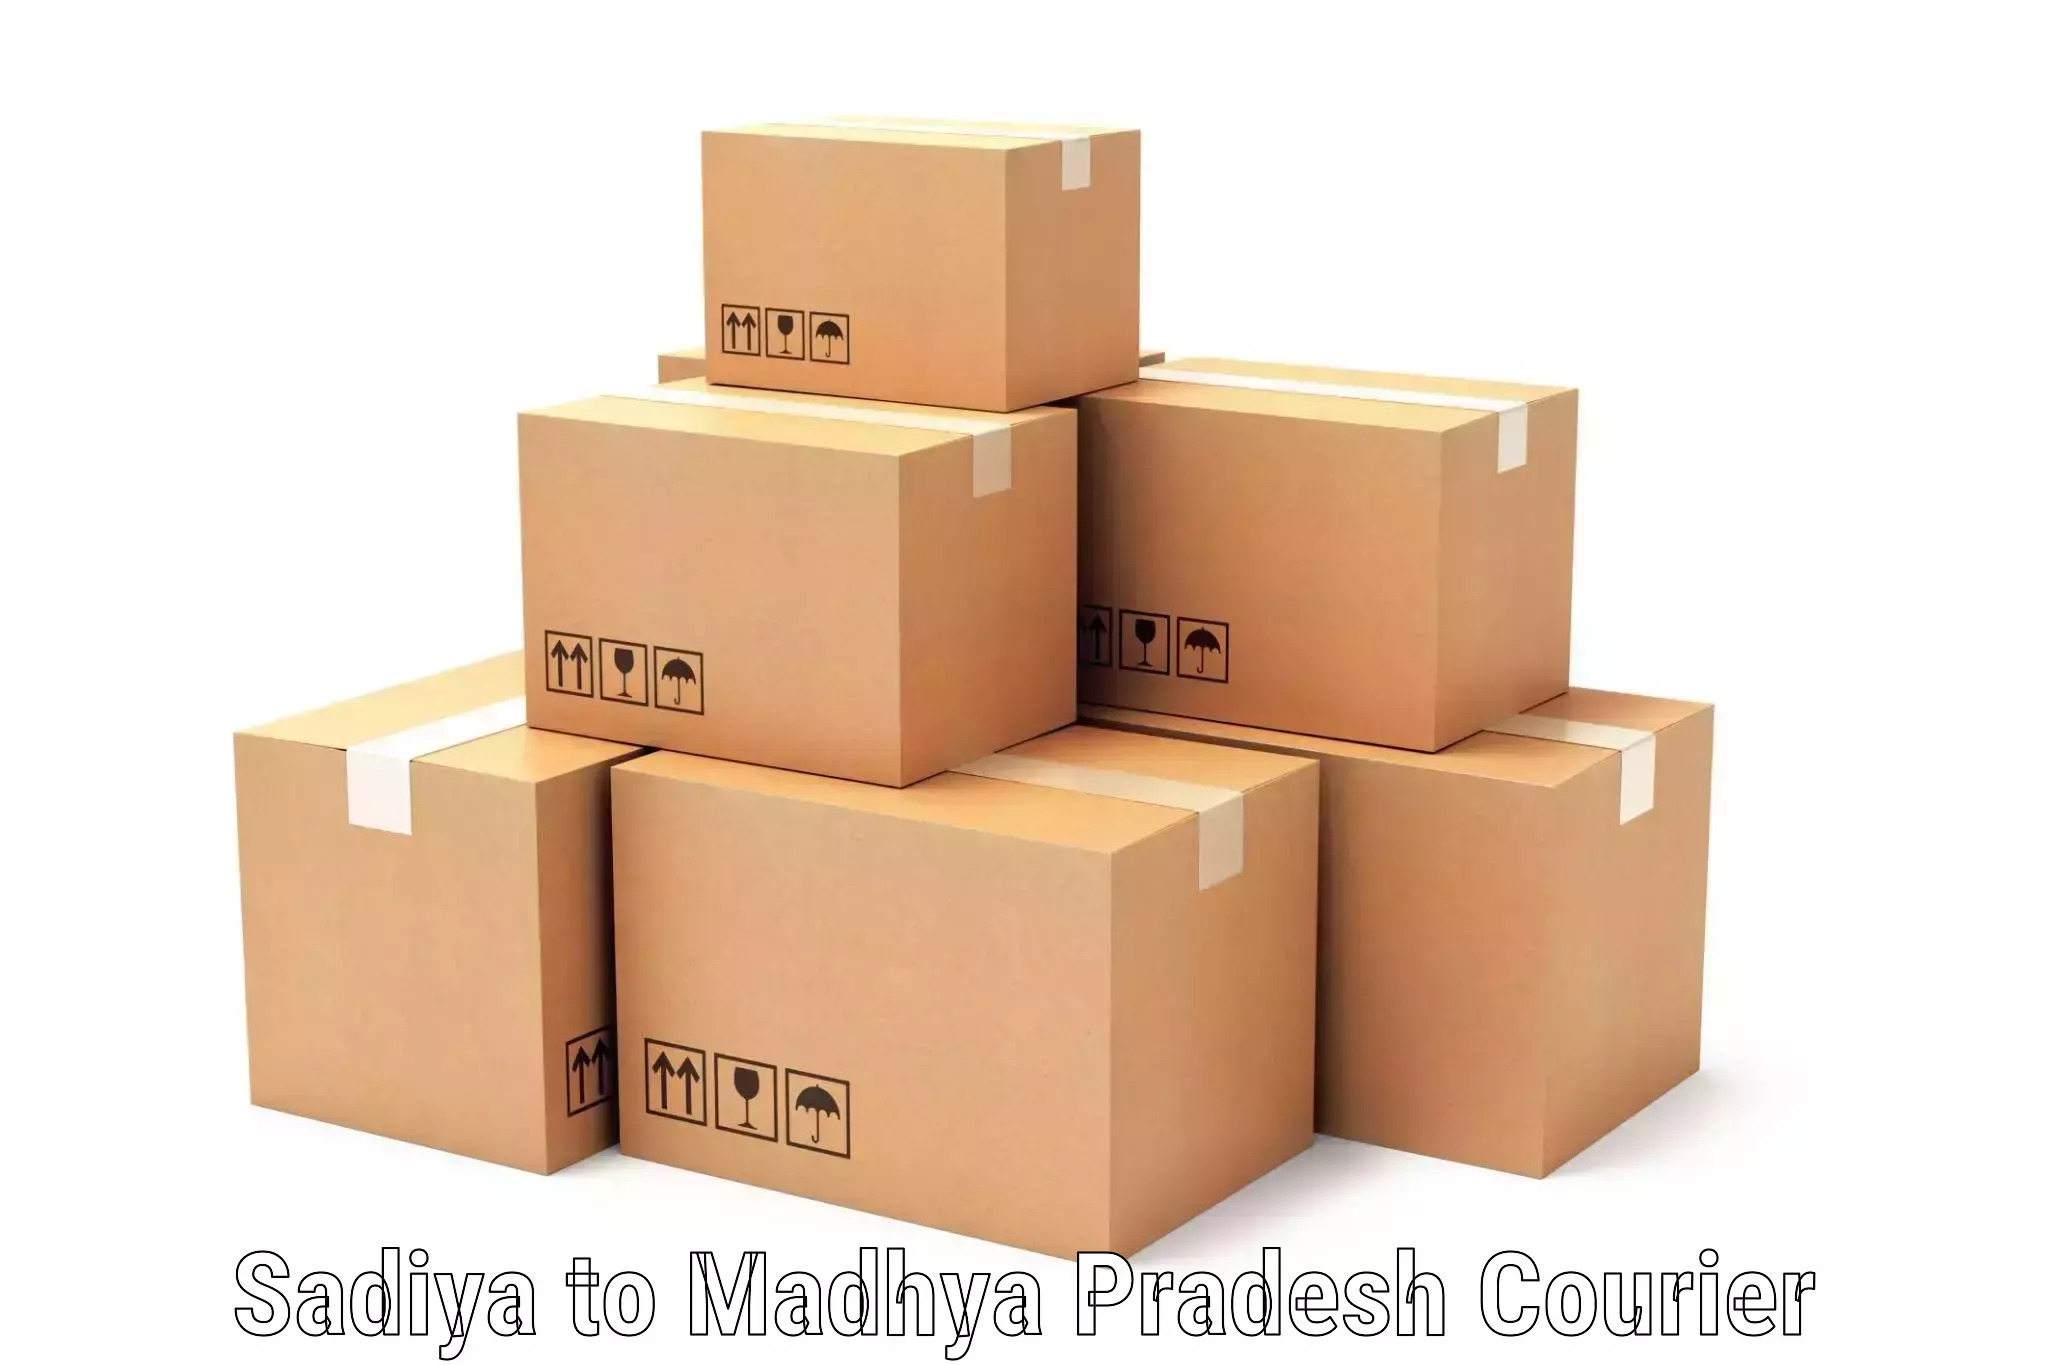 High-capacity parcel service Sadiya to Pali Birsinghpur